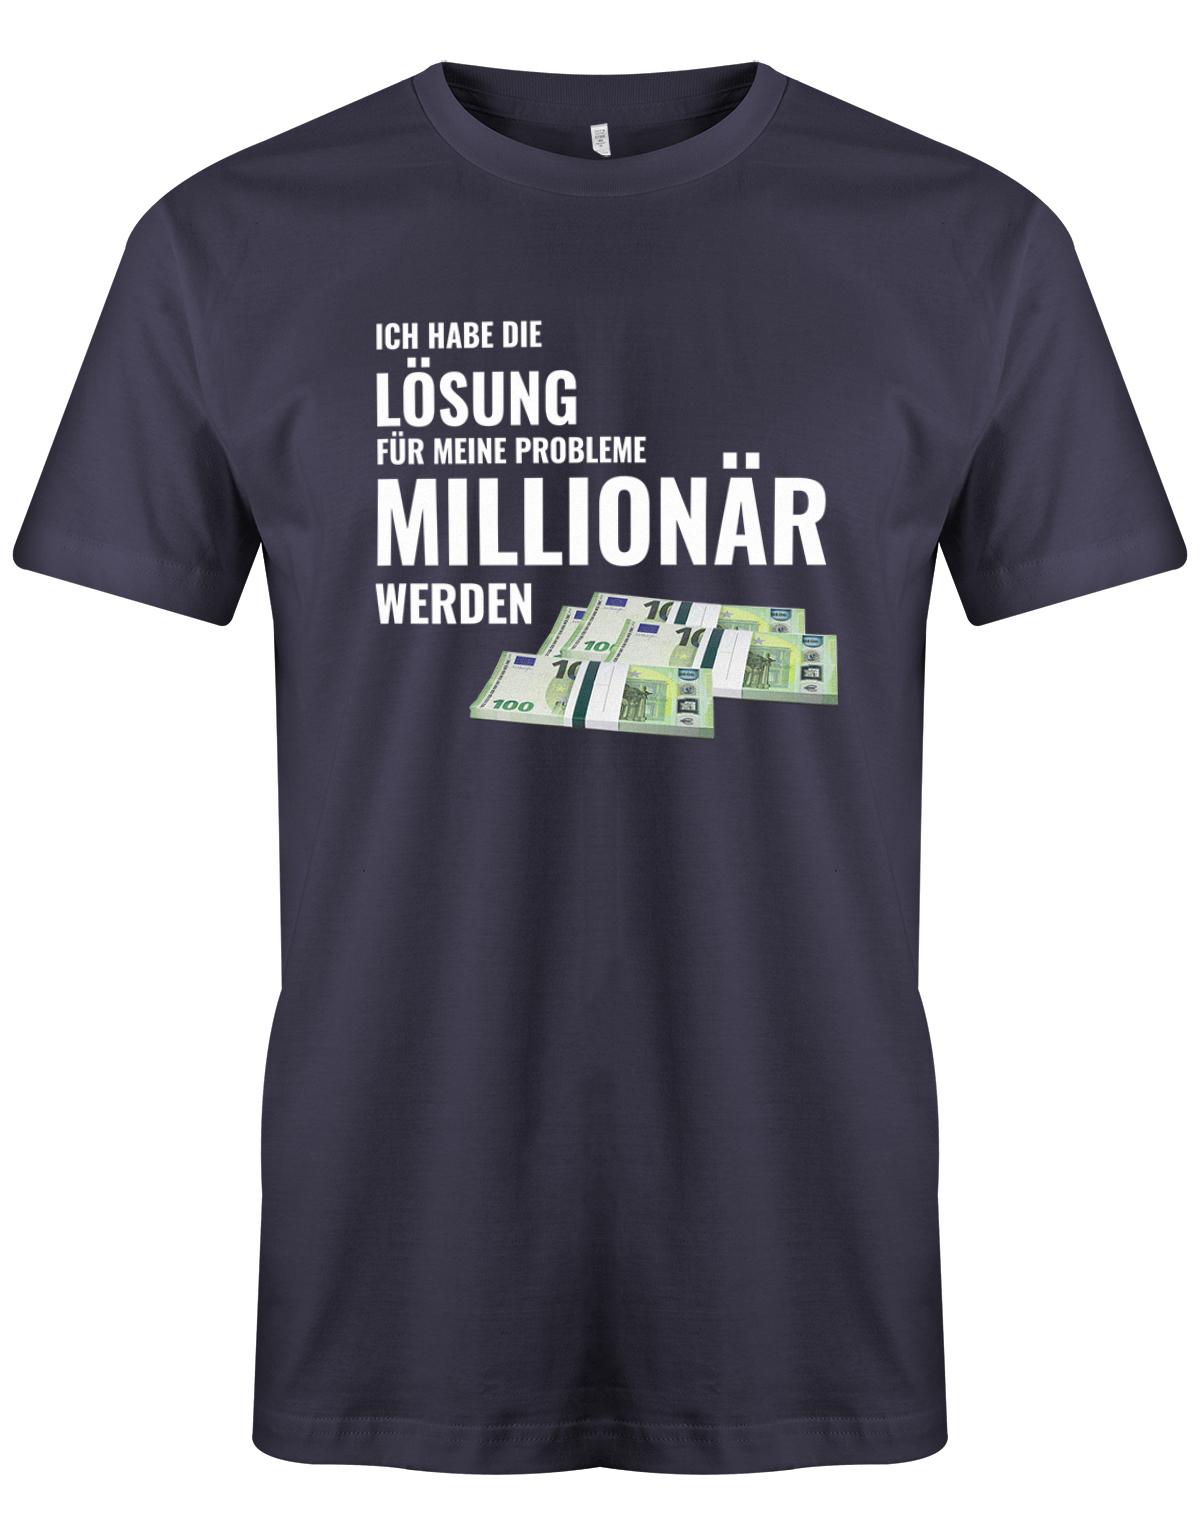 Ich habe die Lösung meiner Probleme - Millionär werden - Herren T-Shirt Navy